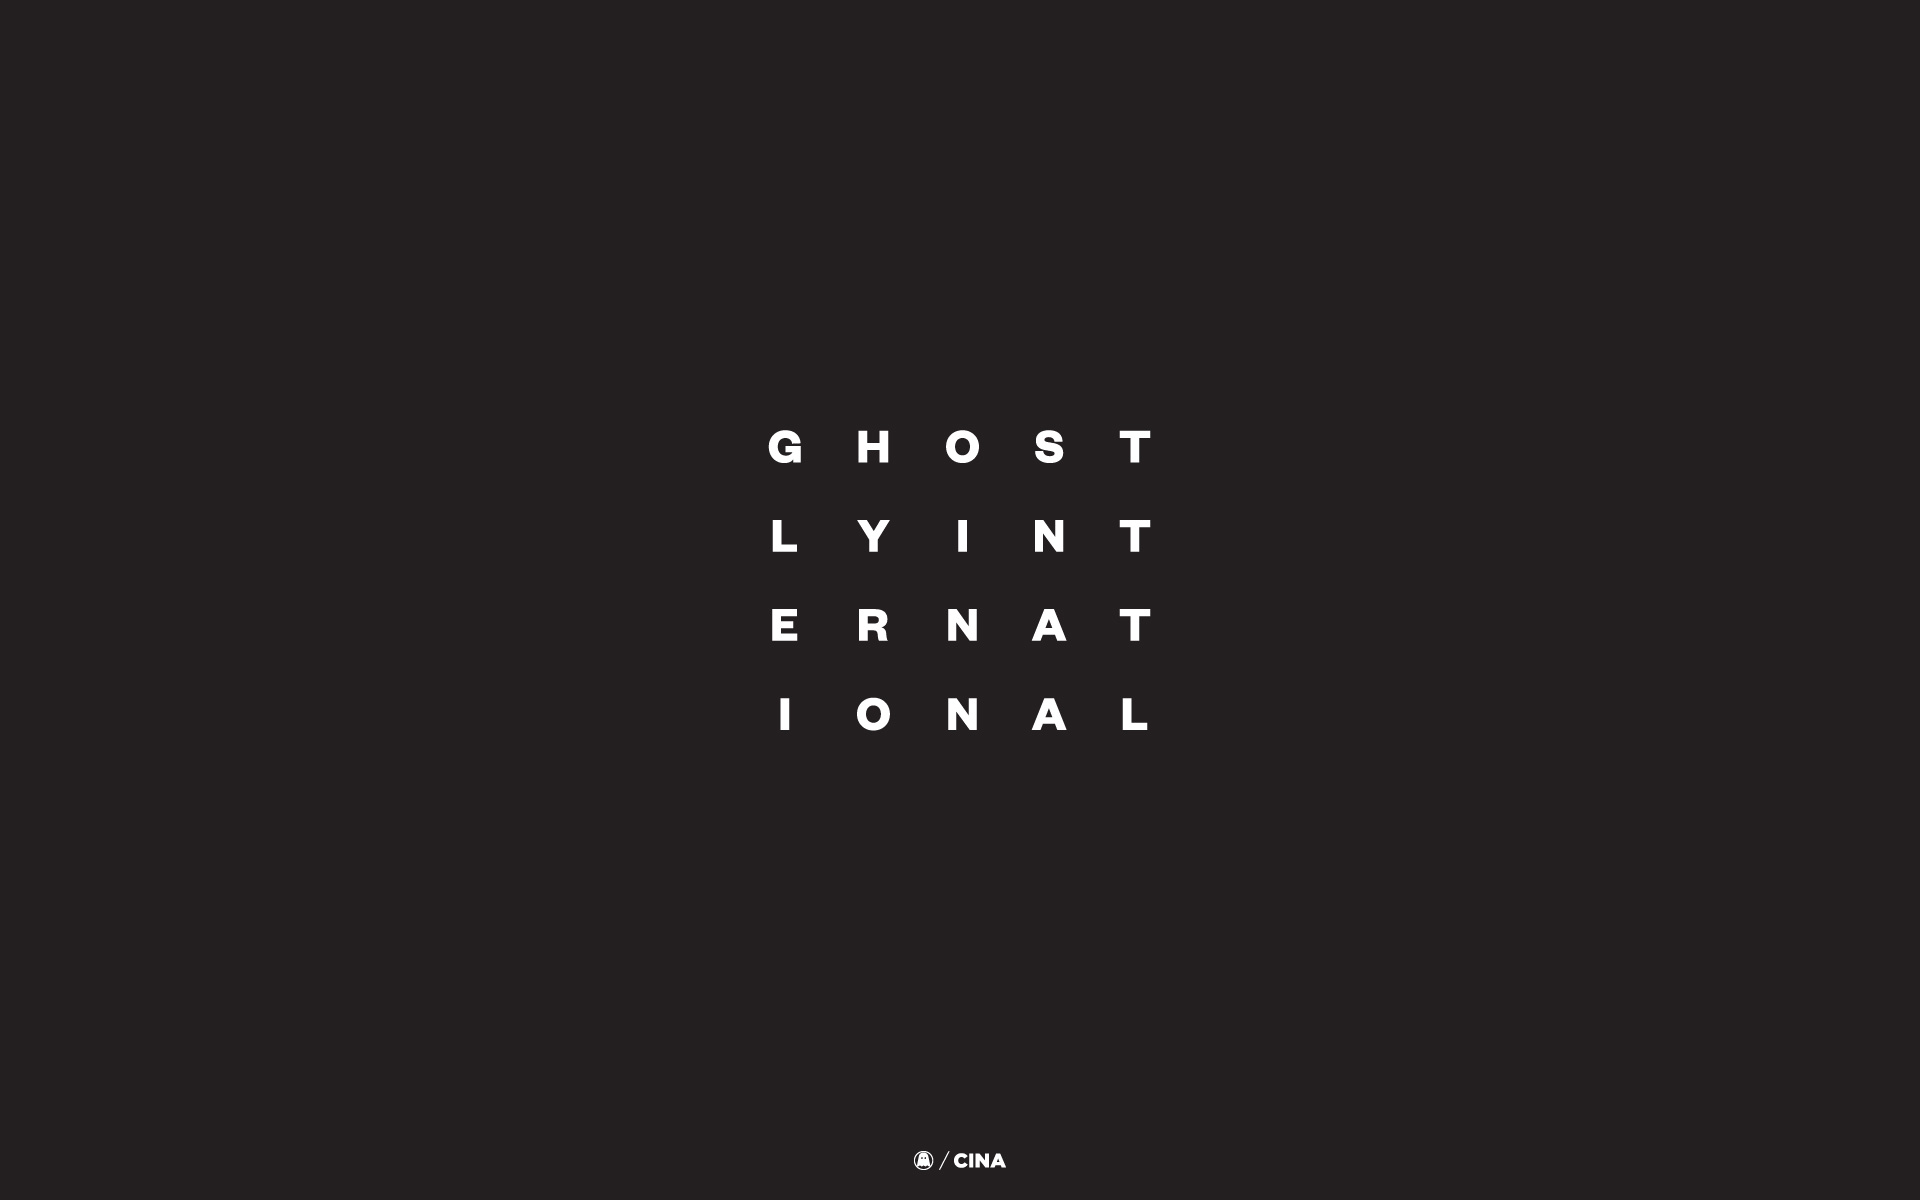 Ghostly International Media